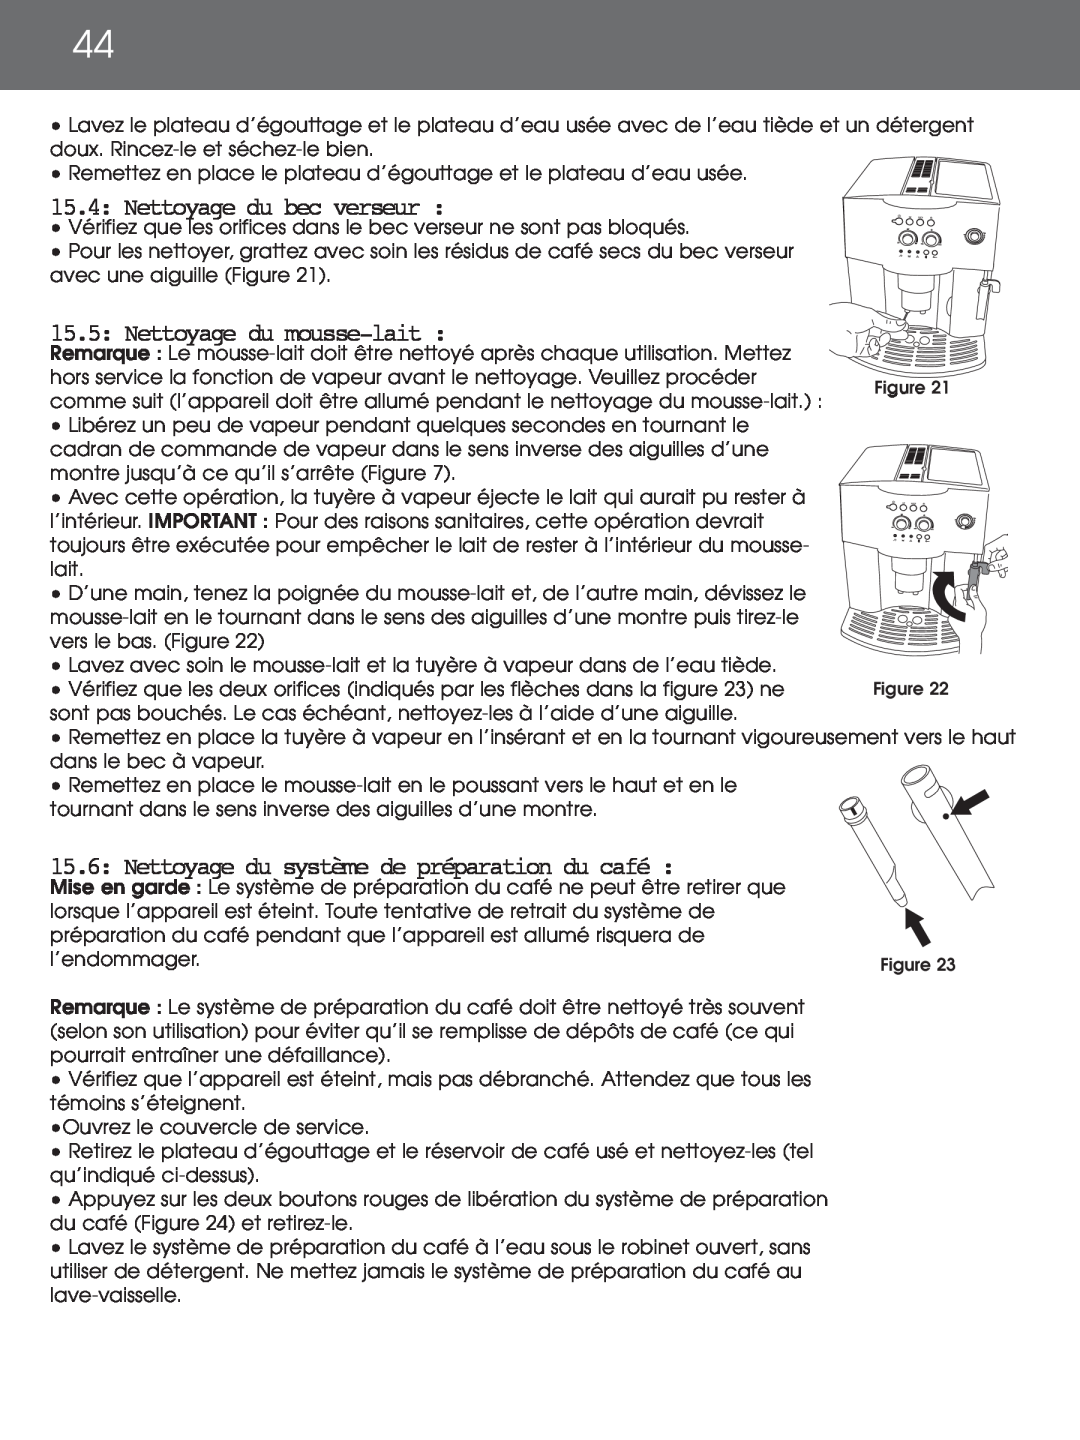 DeLonghi EAM4000 instruction manual 15.4: Nettoyage du bec verseur, 15.5: Nettoyage du mousse-lait 